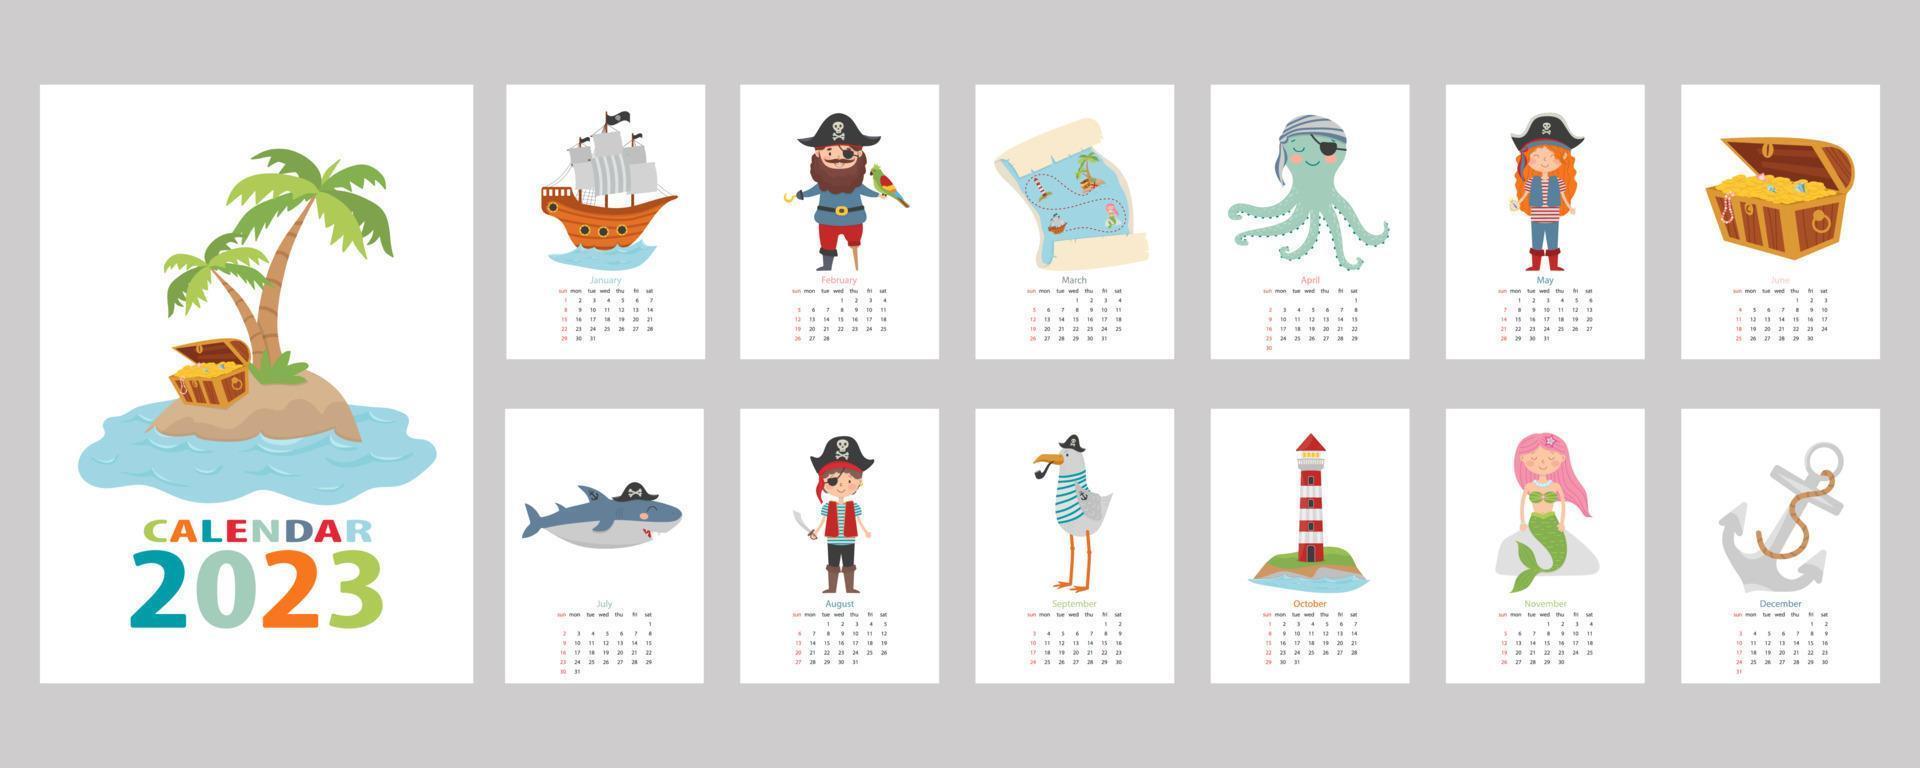 Kalender 2023. Bunter Kinderkalender im Piraten-Design. Pirat, Schatzinsel, Hai, Tintenfisch, Möwe, Meerjungfrau, Schiff und Leuchtturm. vektor